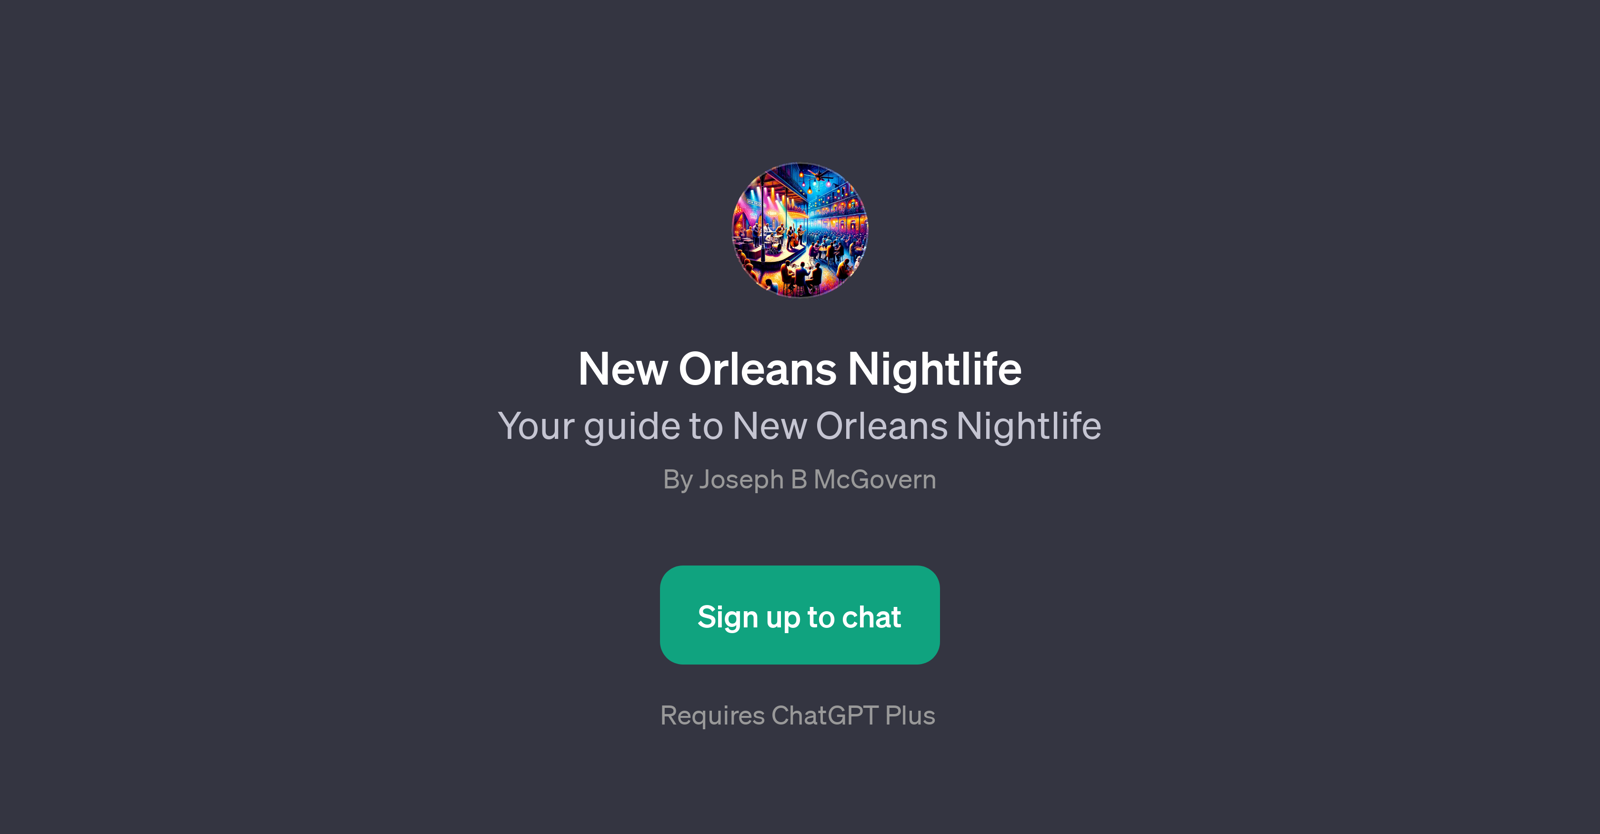 New Orleans Nightlife website